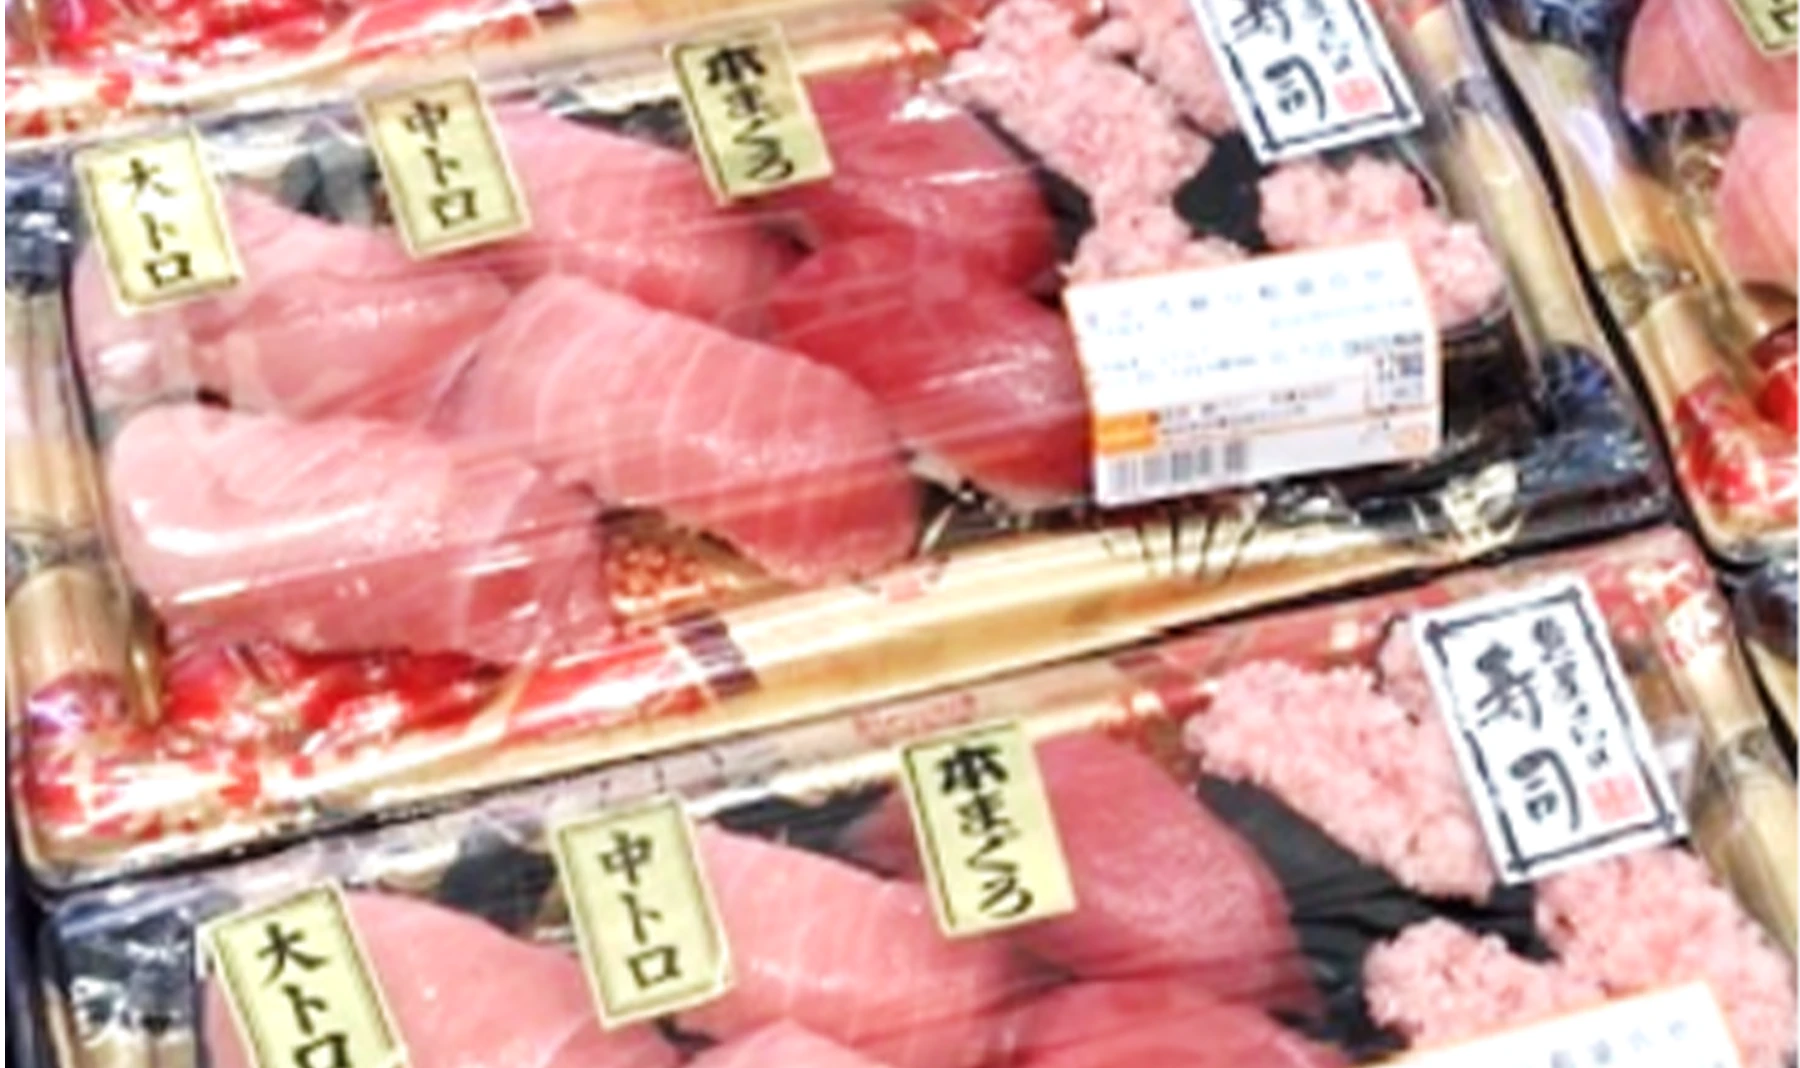 スーパーマーケットの水産部門で販売されているお寿司